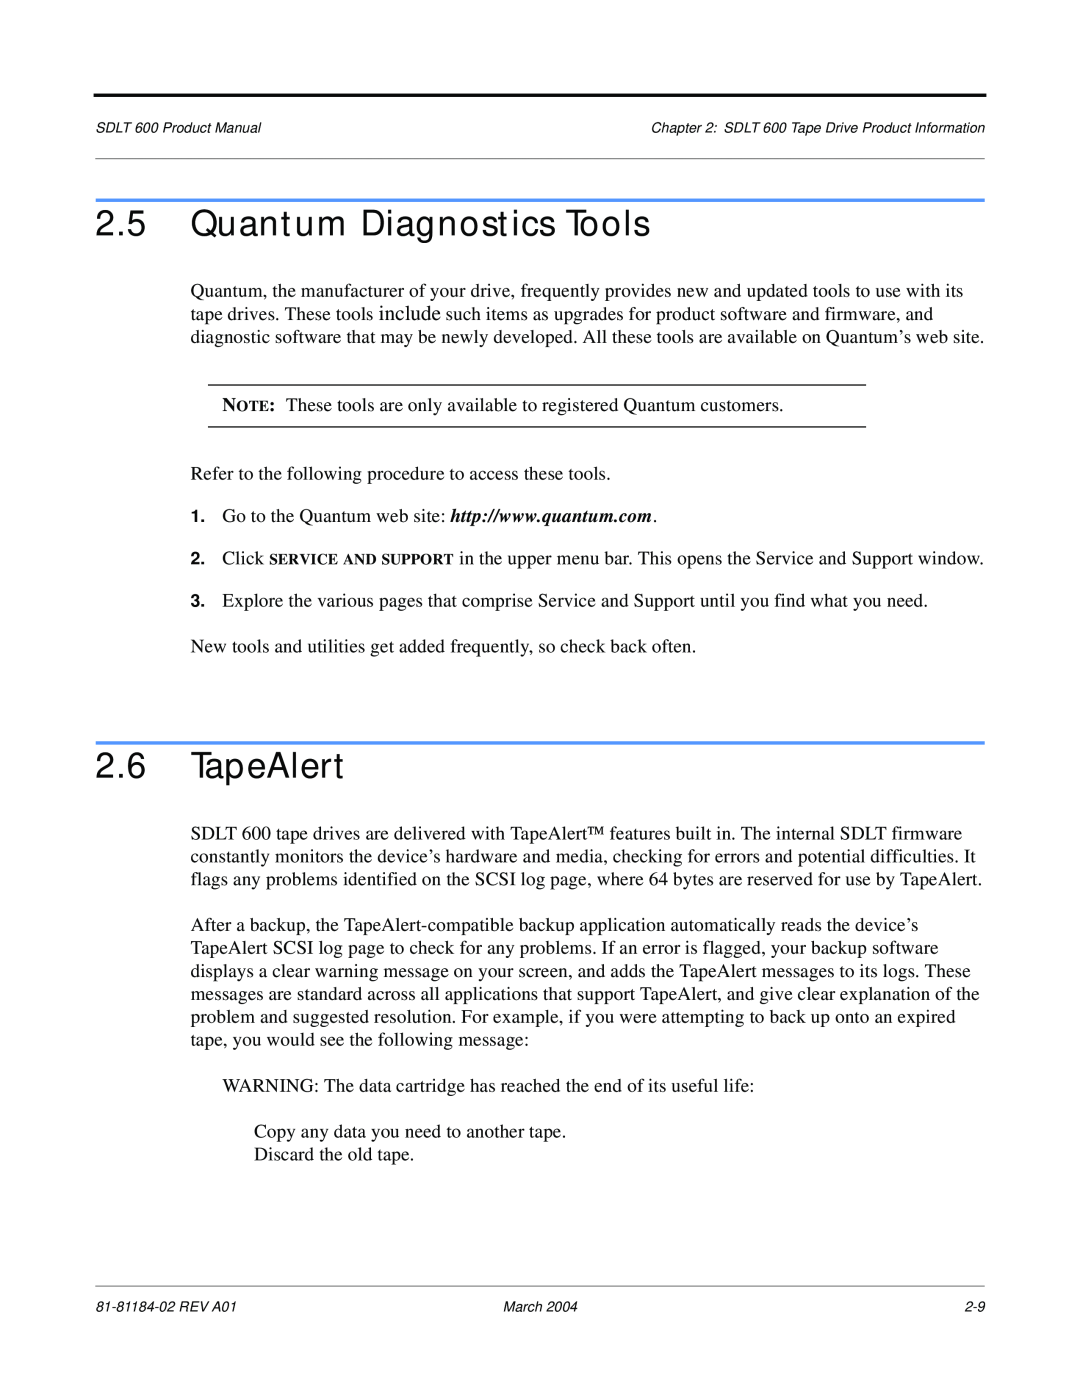 Tandberg Data 600 manual Quantum Diagnostics Tools, TapeAlert 